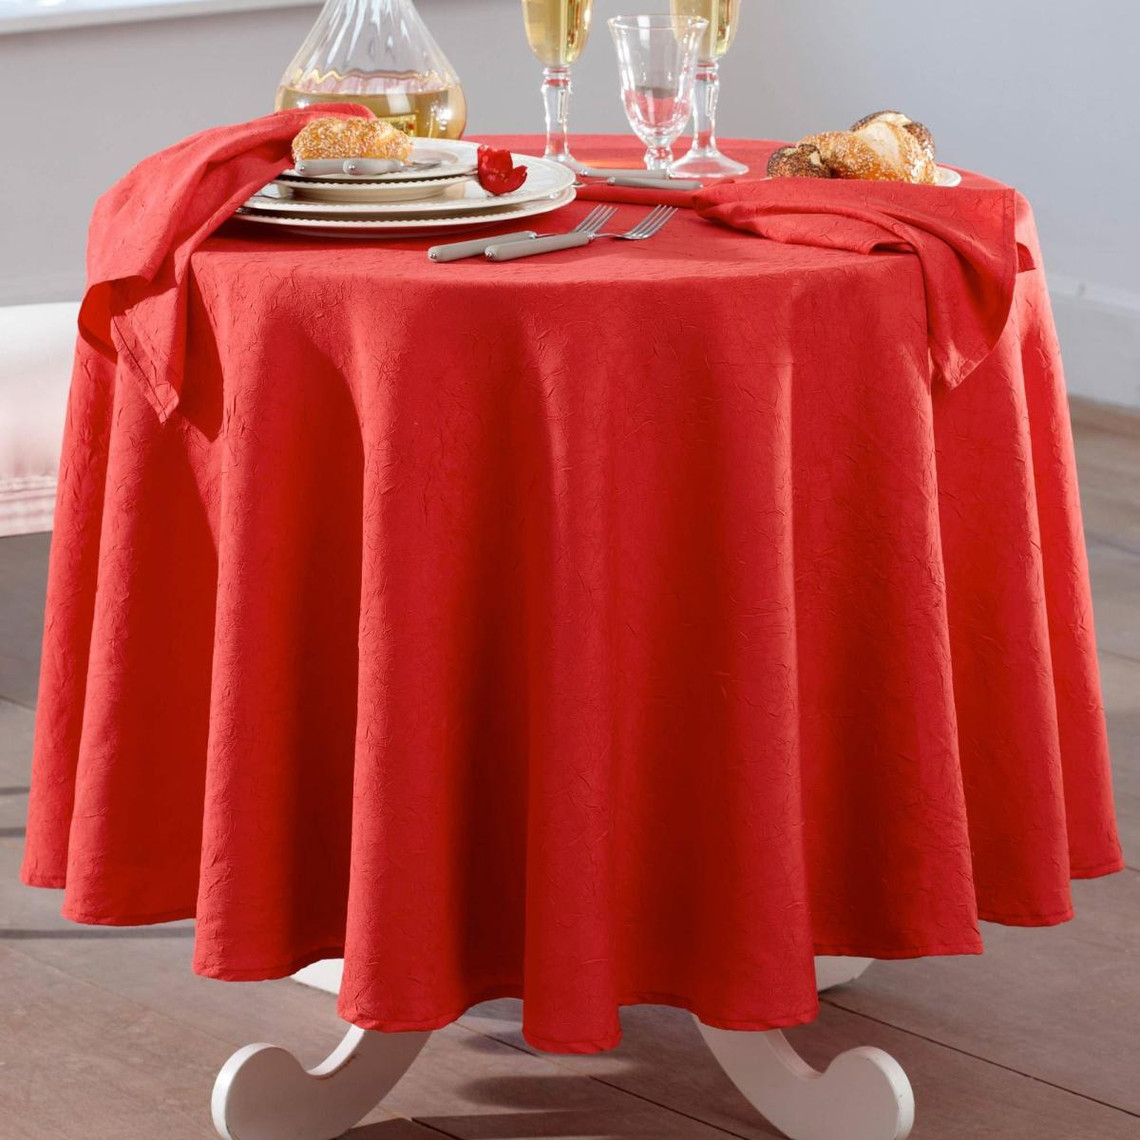 lot de 3 serviettes de table effet froissé fontana rouge rubis